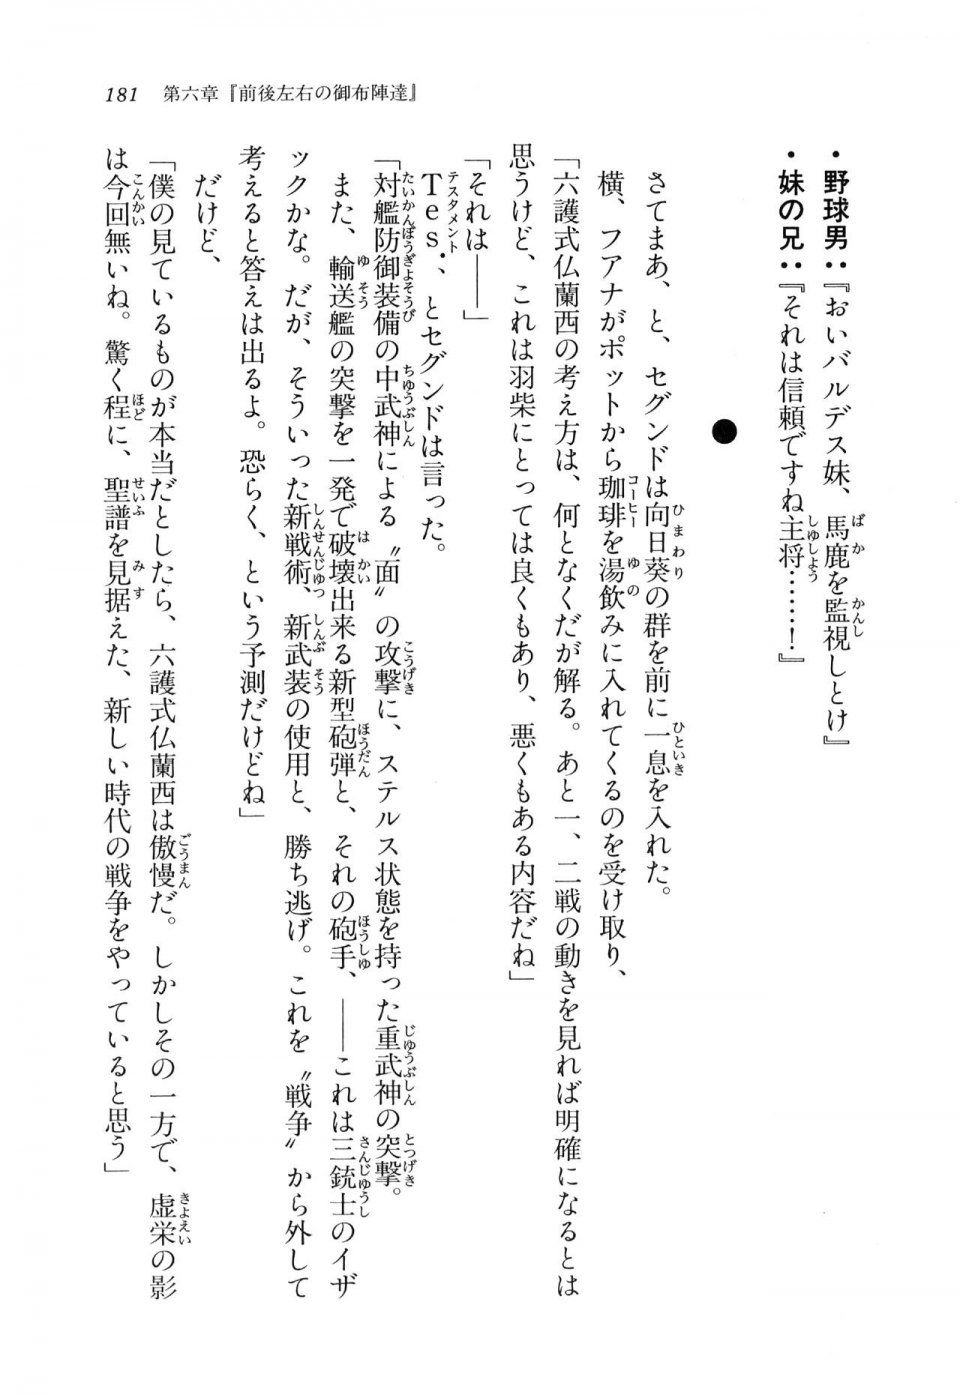 Kyoukai Senjou no Horizon LN Vol 11(5A) - Photo #181